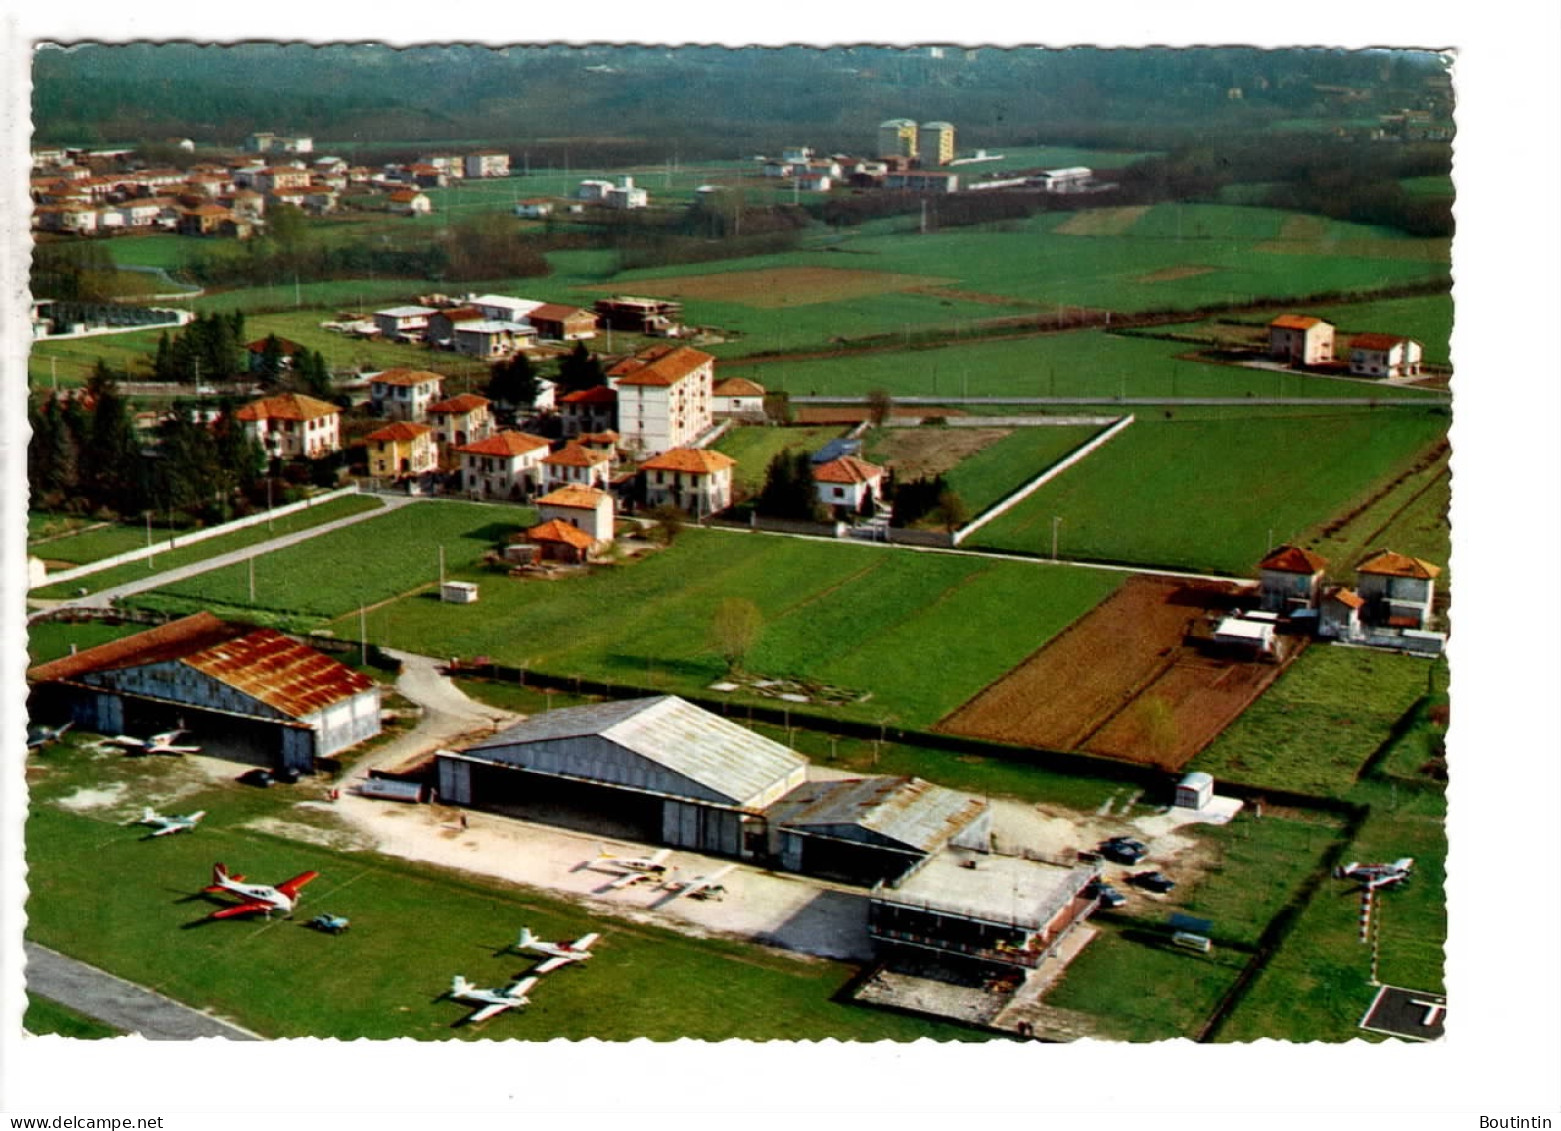 Aero Club Varese - Varese